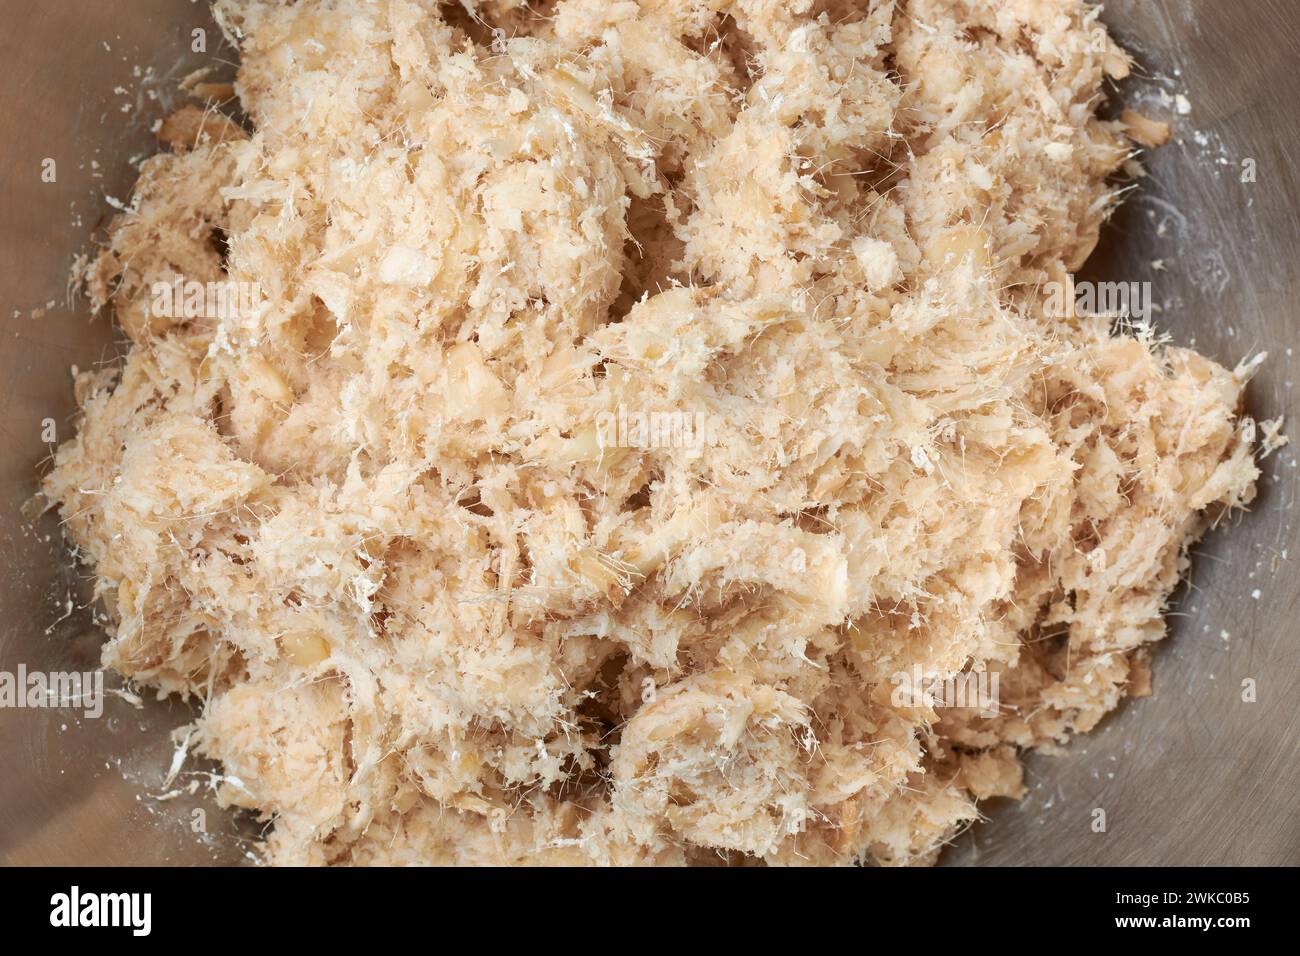 polpa di rizomi di arrugginiti organici essiccati da trasformare in polvere, maranta arundinacea, lavata, sbucciata e finemente macinata in polpa Foto Stock